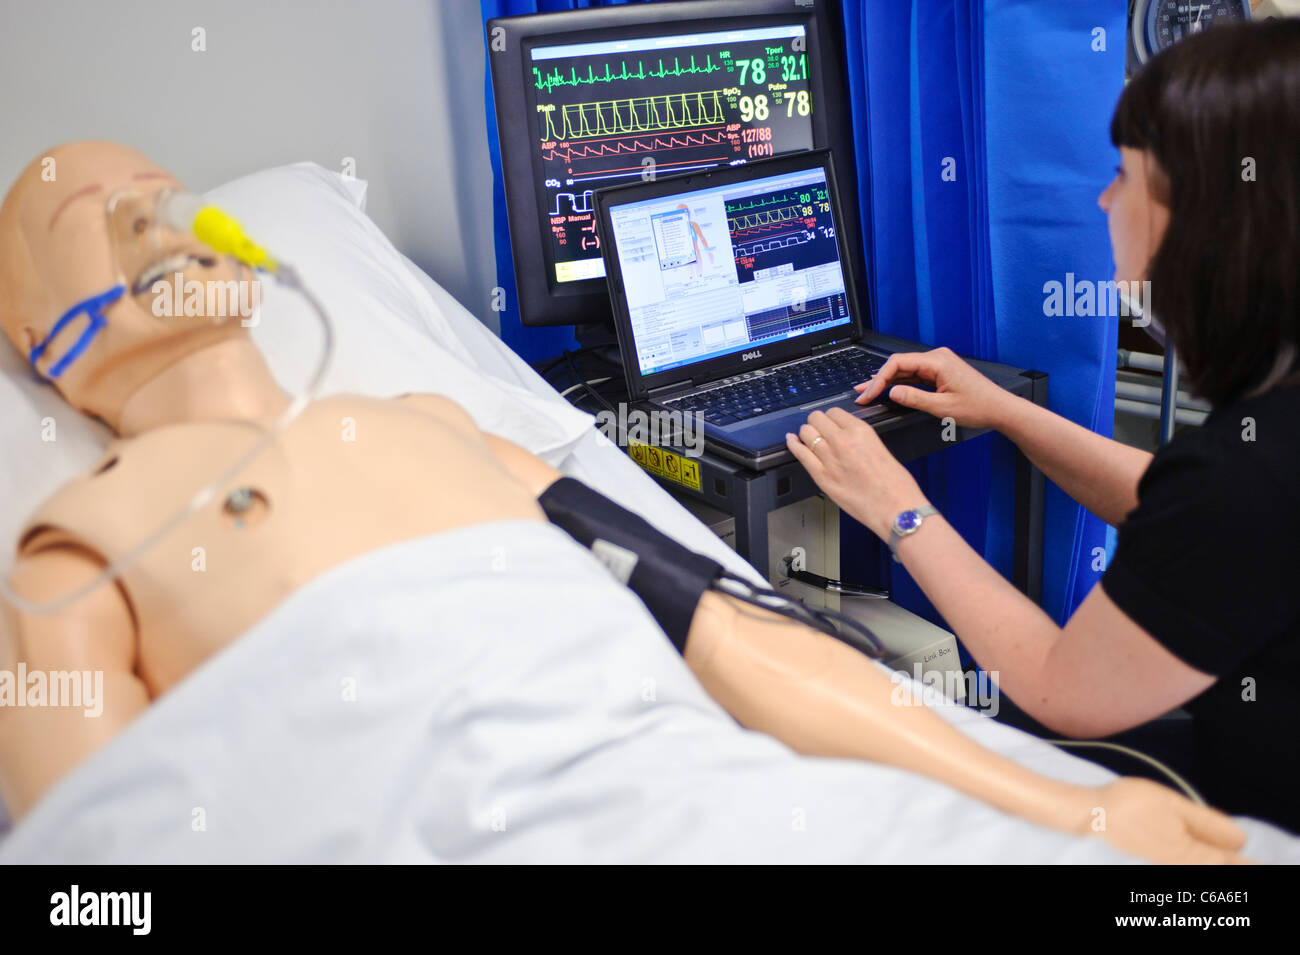 La tenue de simulations infirmière patient factice tests mannequin in hospital bed ward mise Banque D'Images